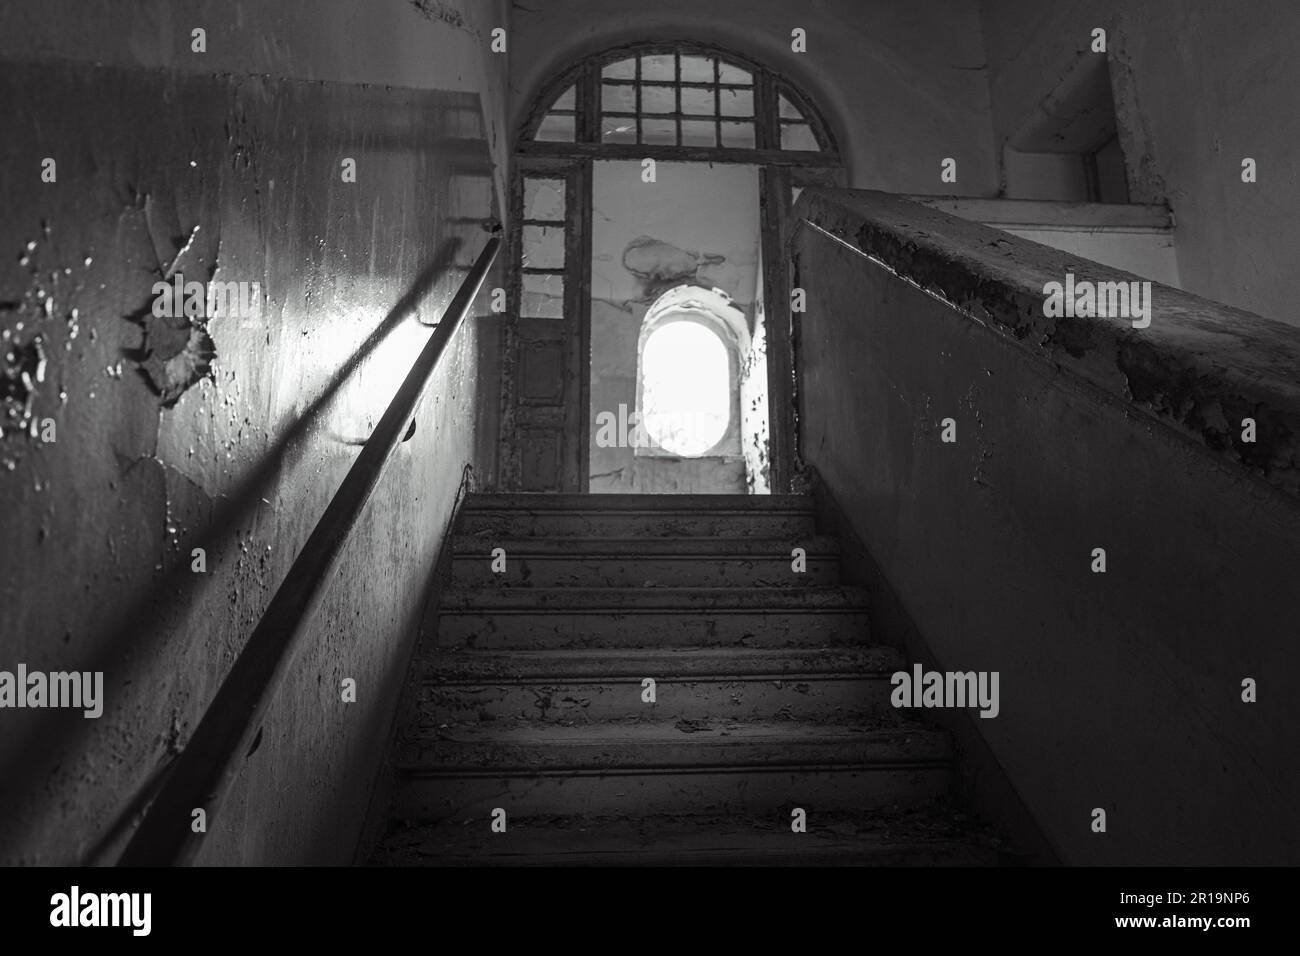 Ein altes Gebäude mit einer schattigen Treppe, die zum Eingang führt, Graustufen Stockfoto